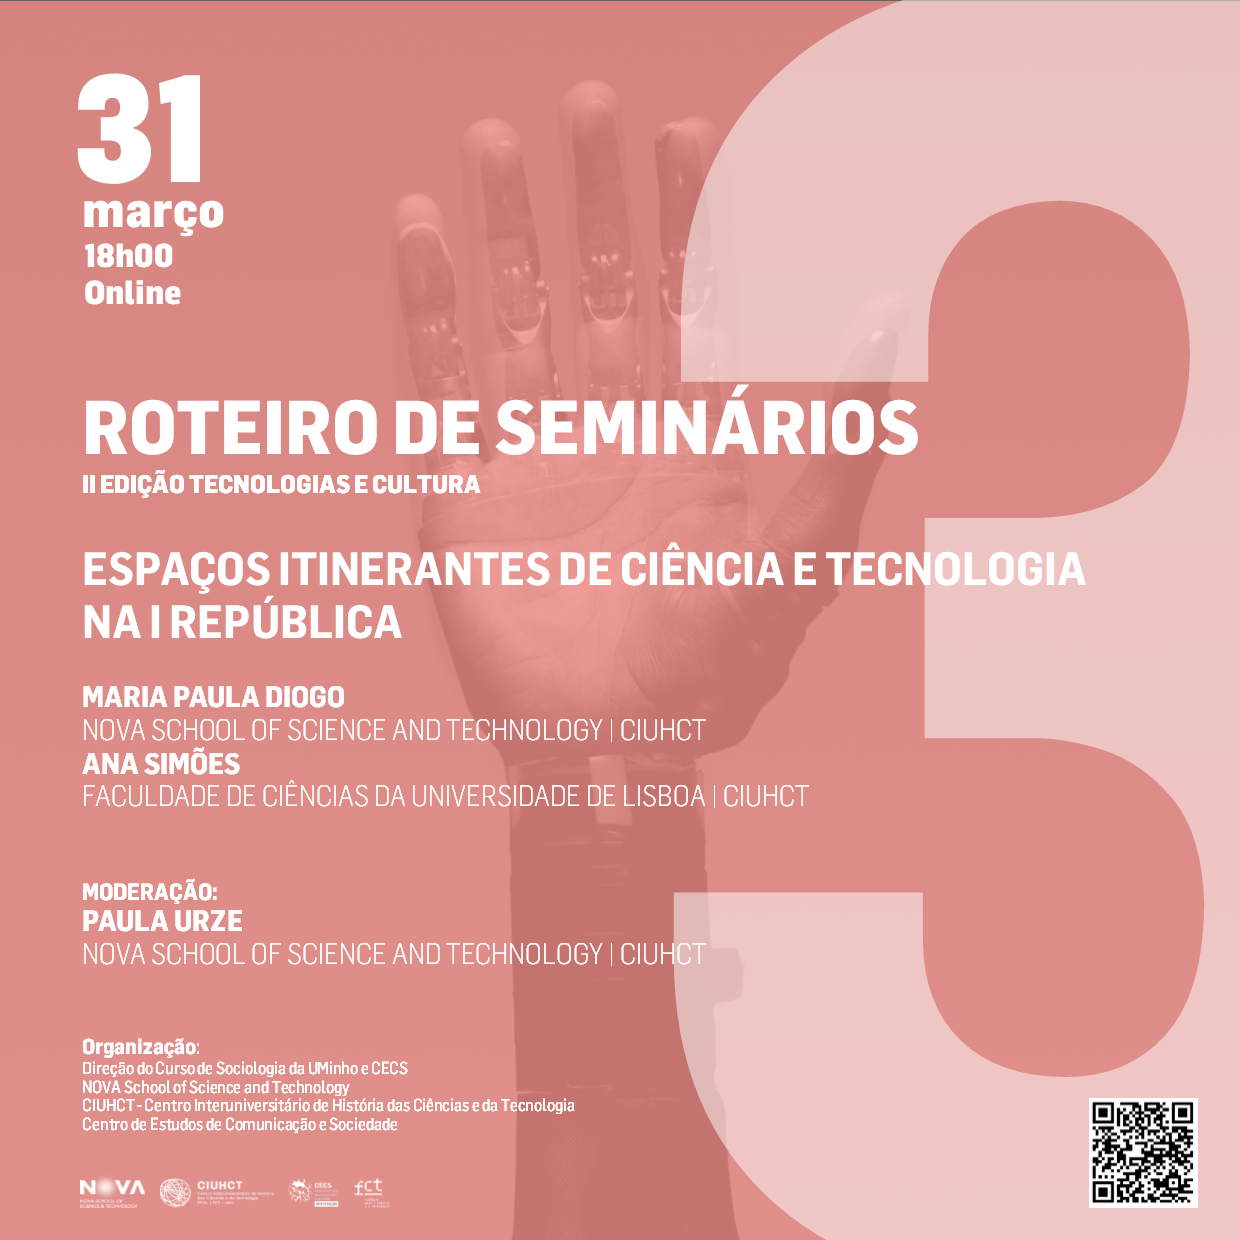 Roteiro_seminario_marco23.png